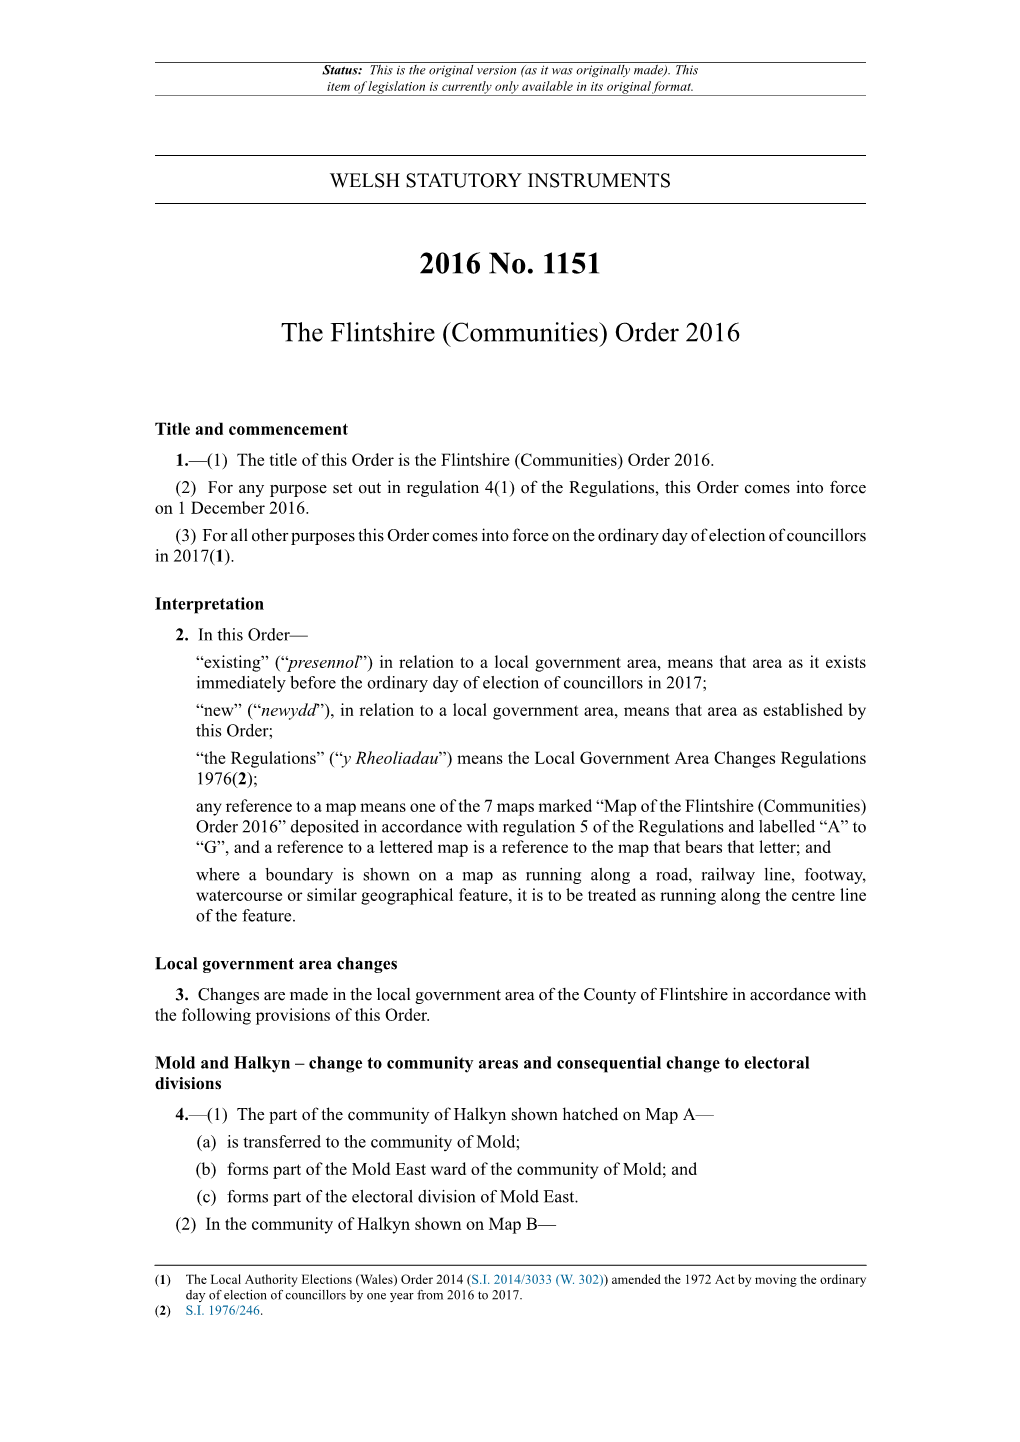 The Flintshire (Communities) Order 2016